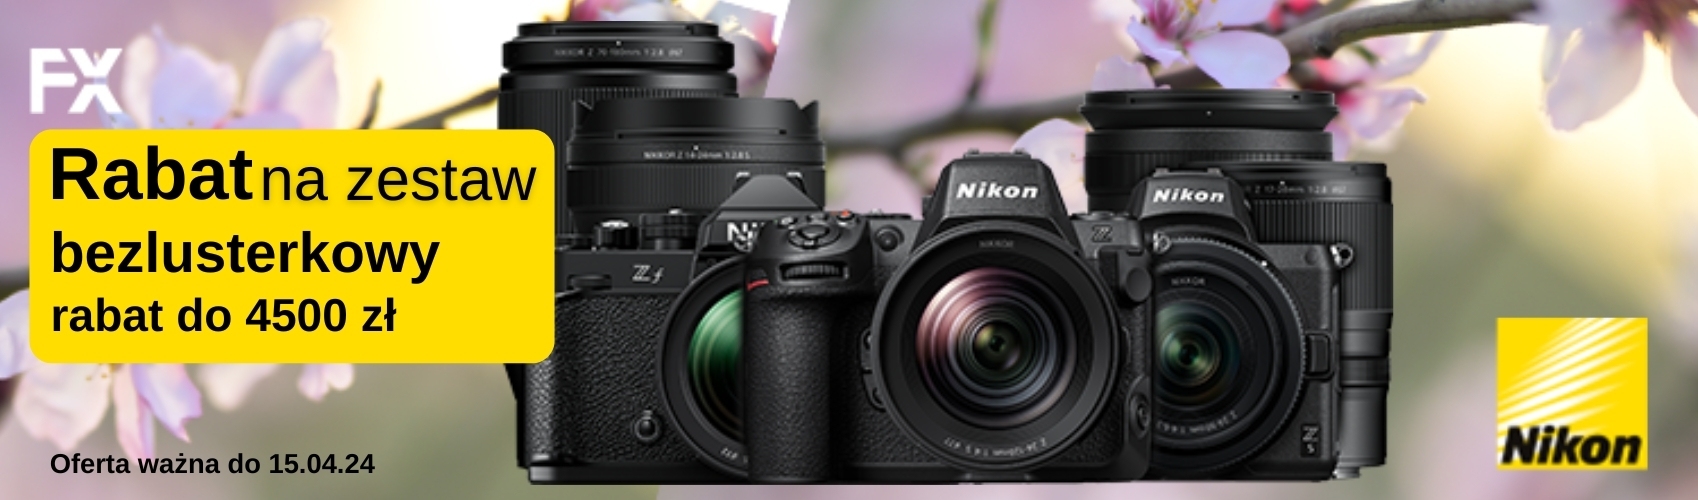 Nikon|Rabat na zestaw bezlusterkowy